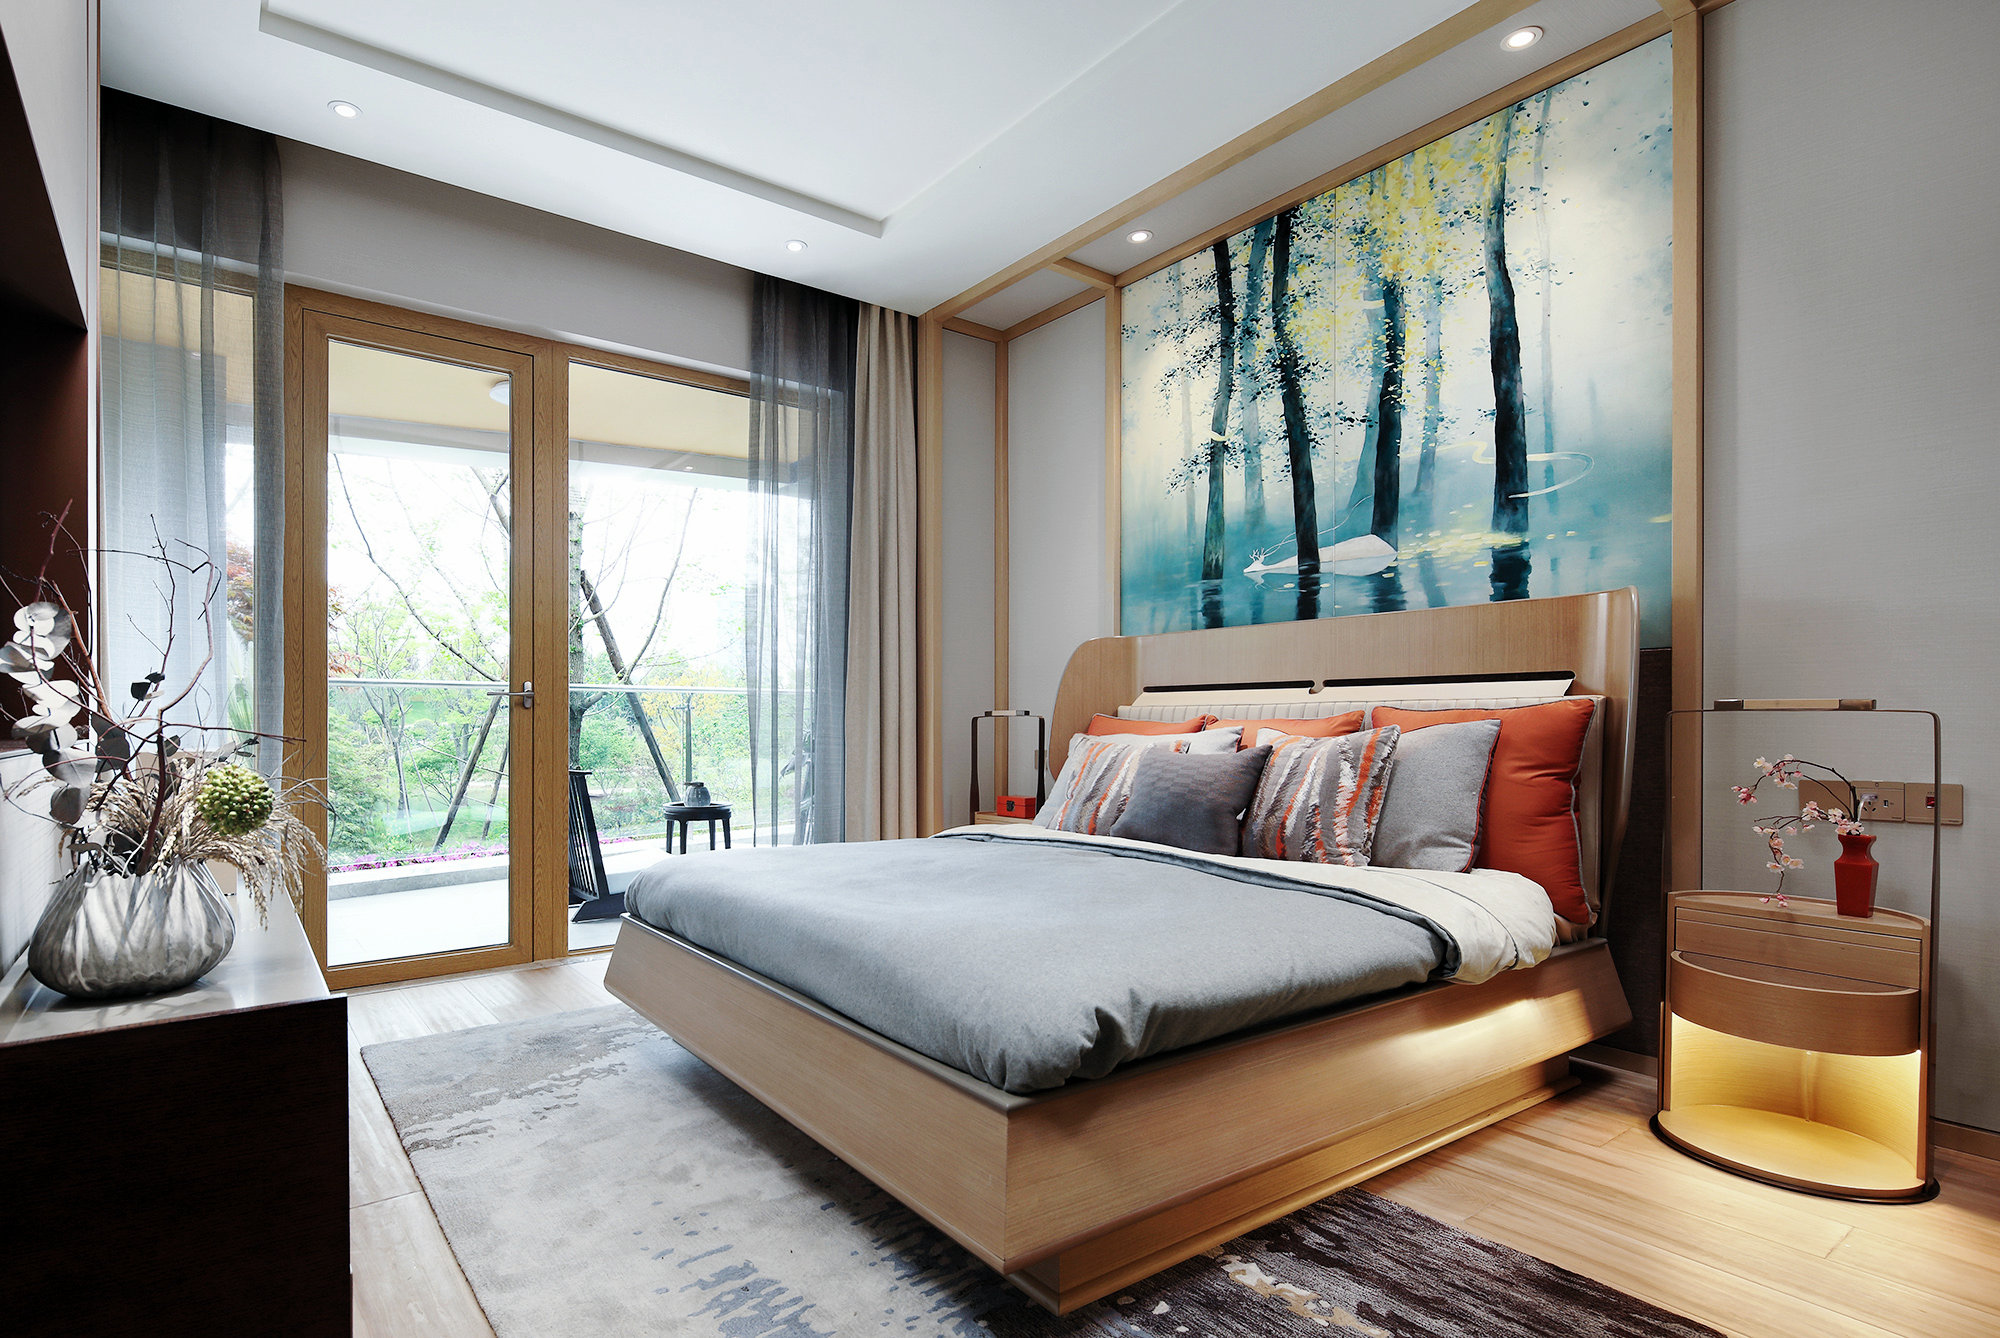 双人床温润的质地，配以触感舒适的床品，呈现出舒适阔然的空间氛围。